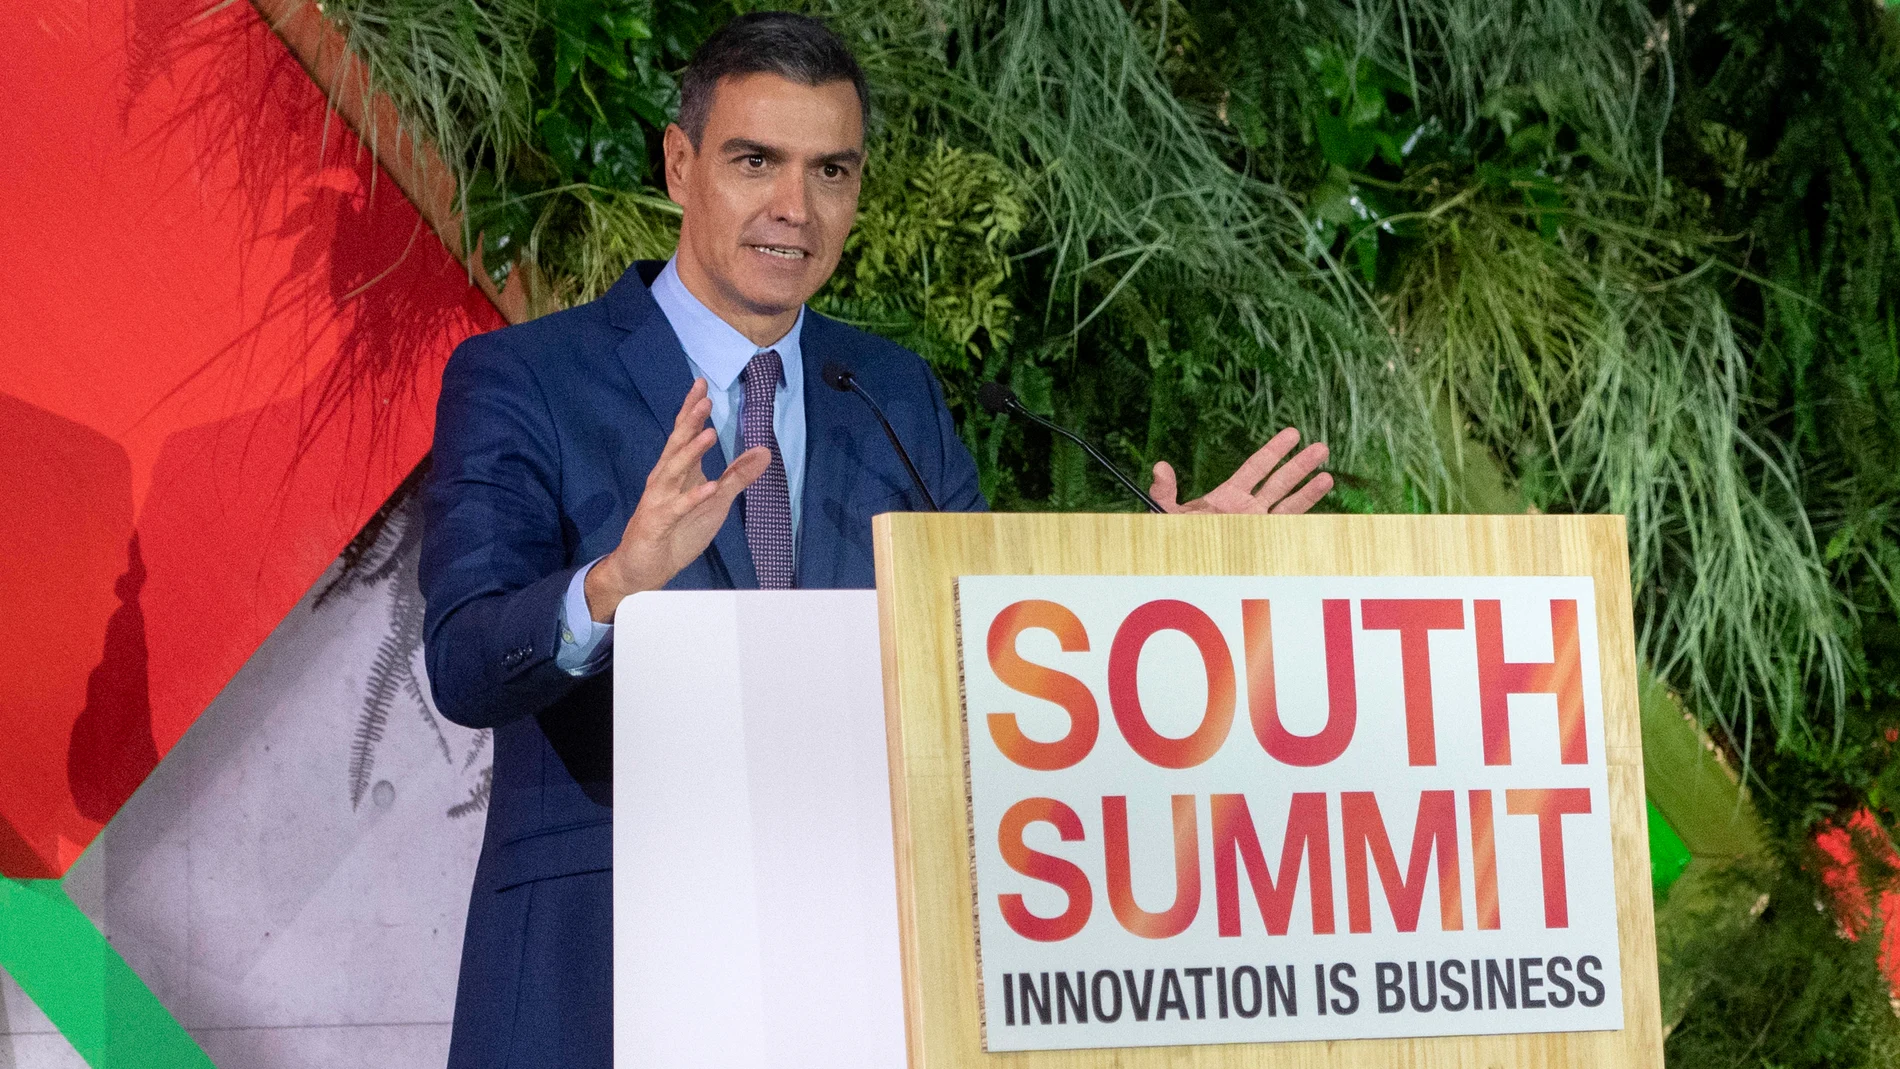 El presidente del Gobierno, Pedro Sánchez, interviene durante la clausura del South Summit 2021